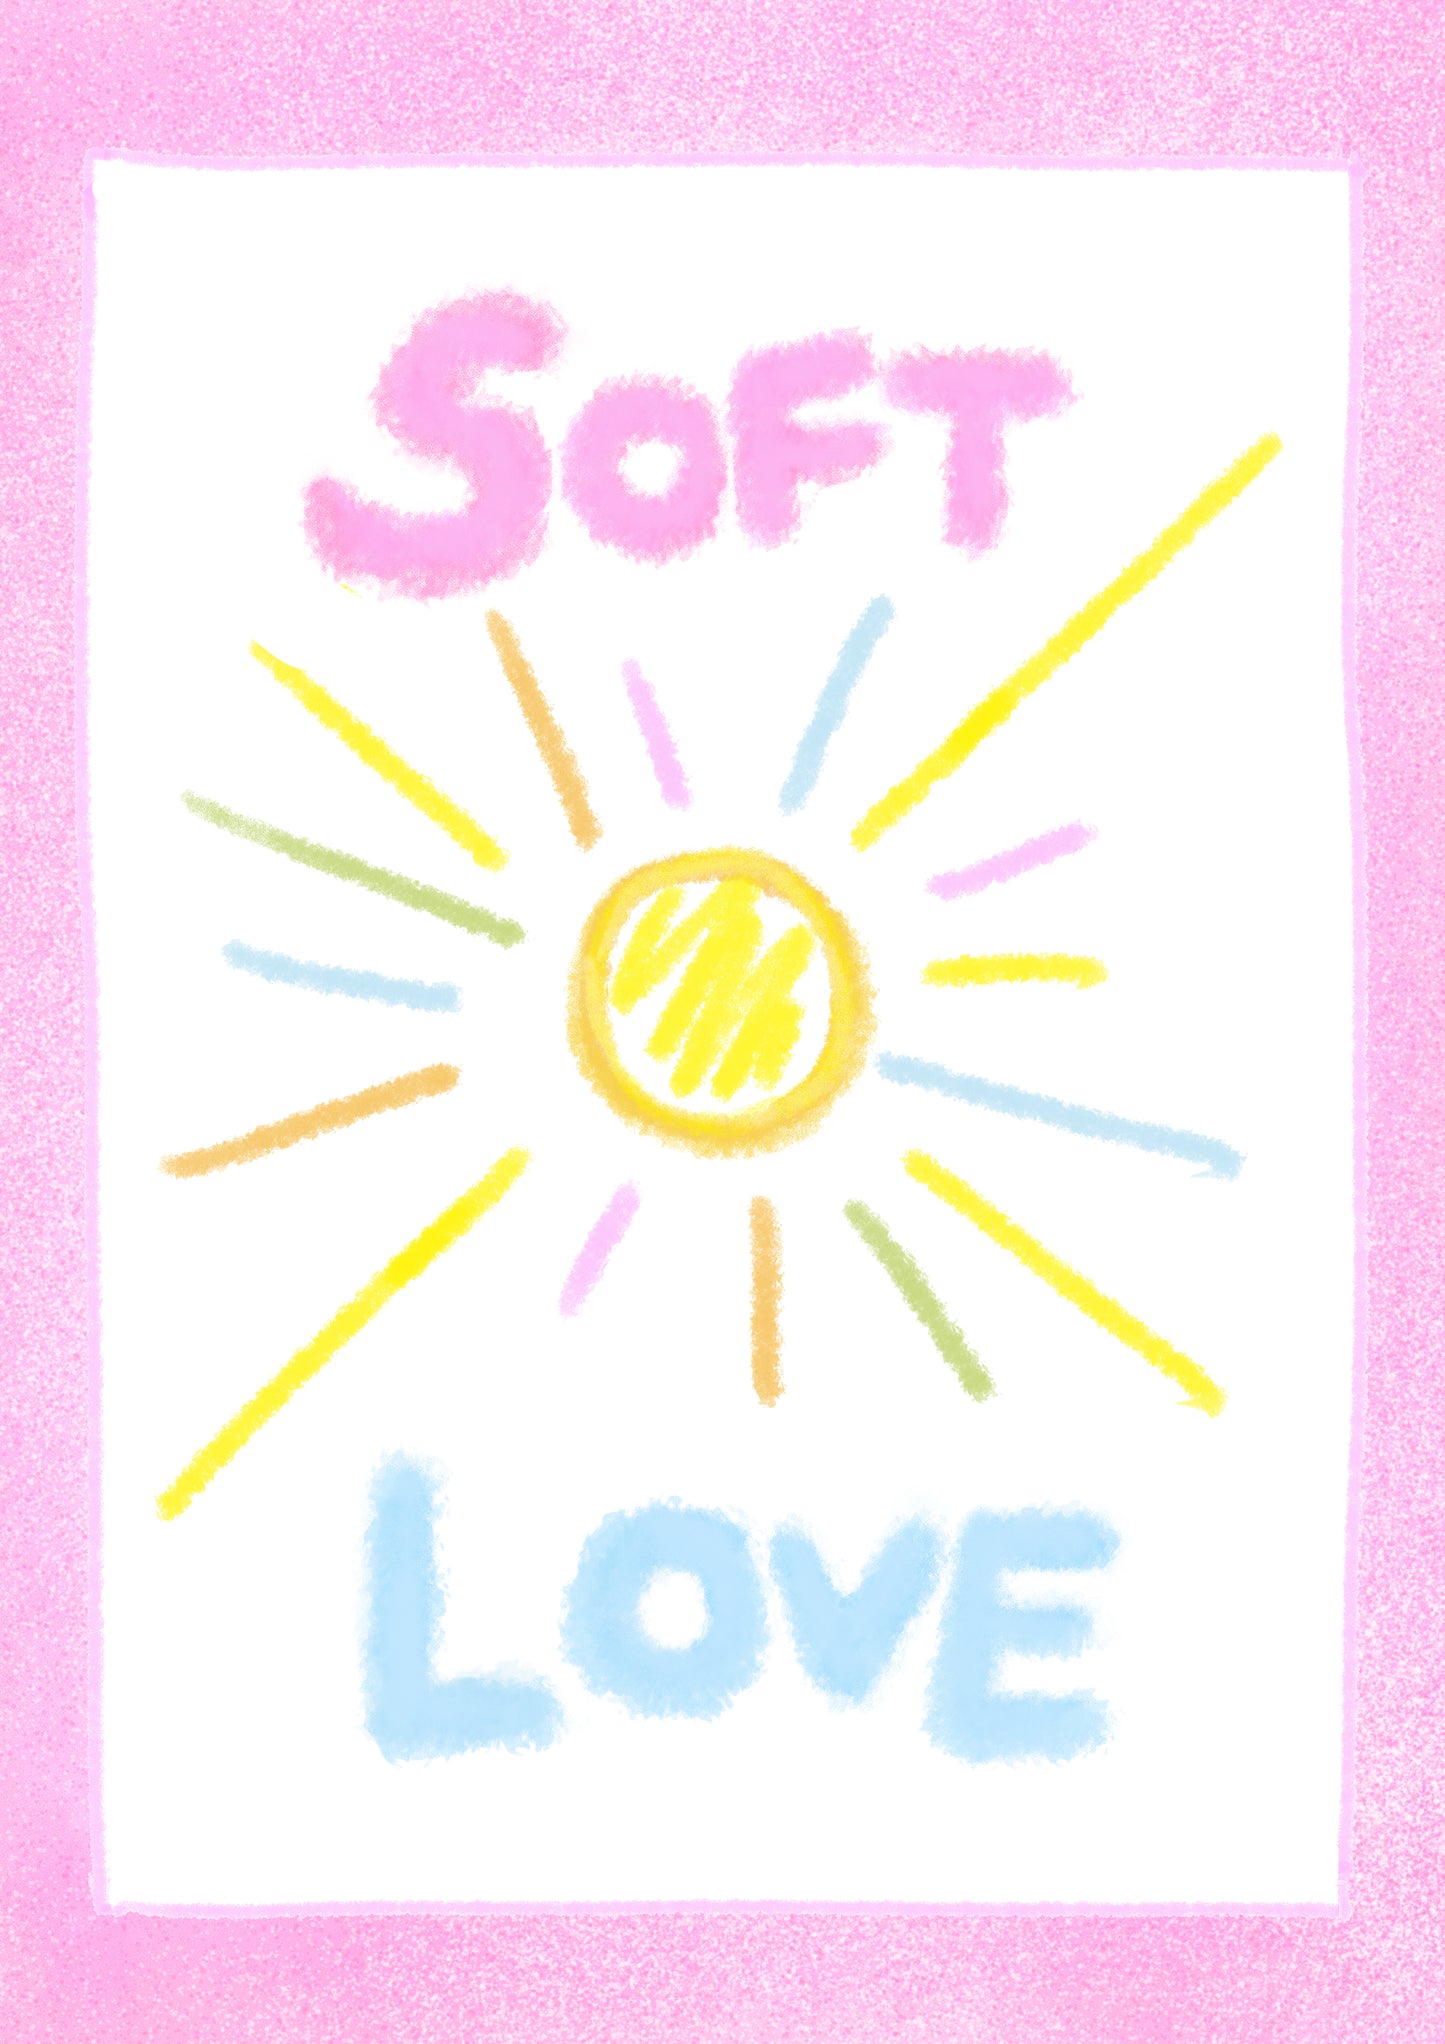 Soft Love / Tough Love